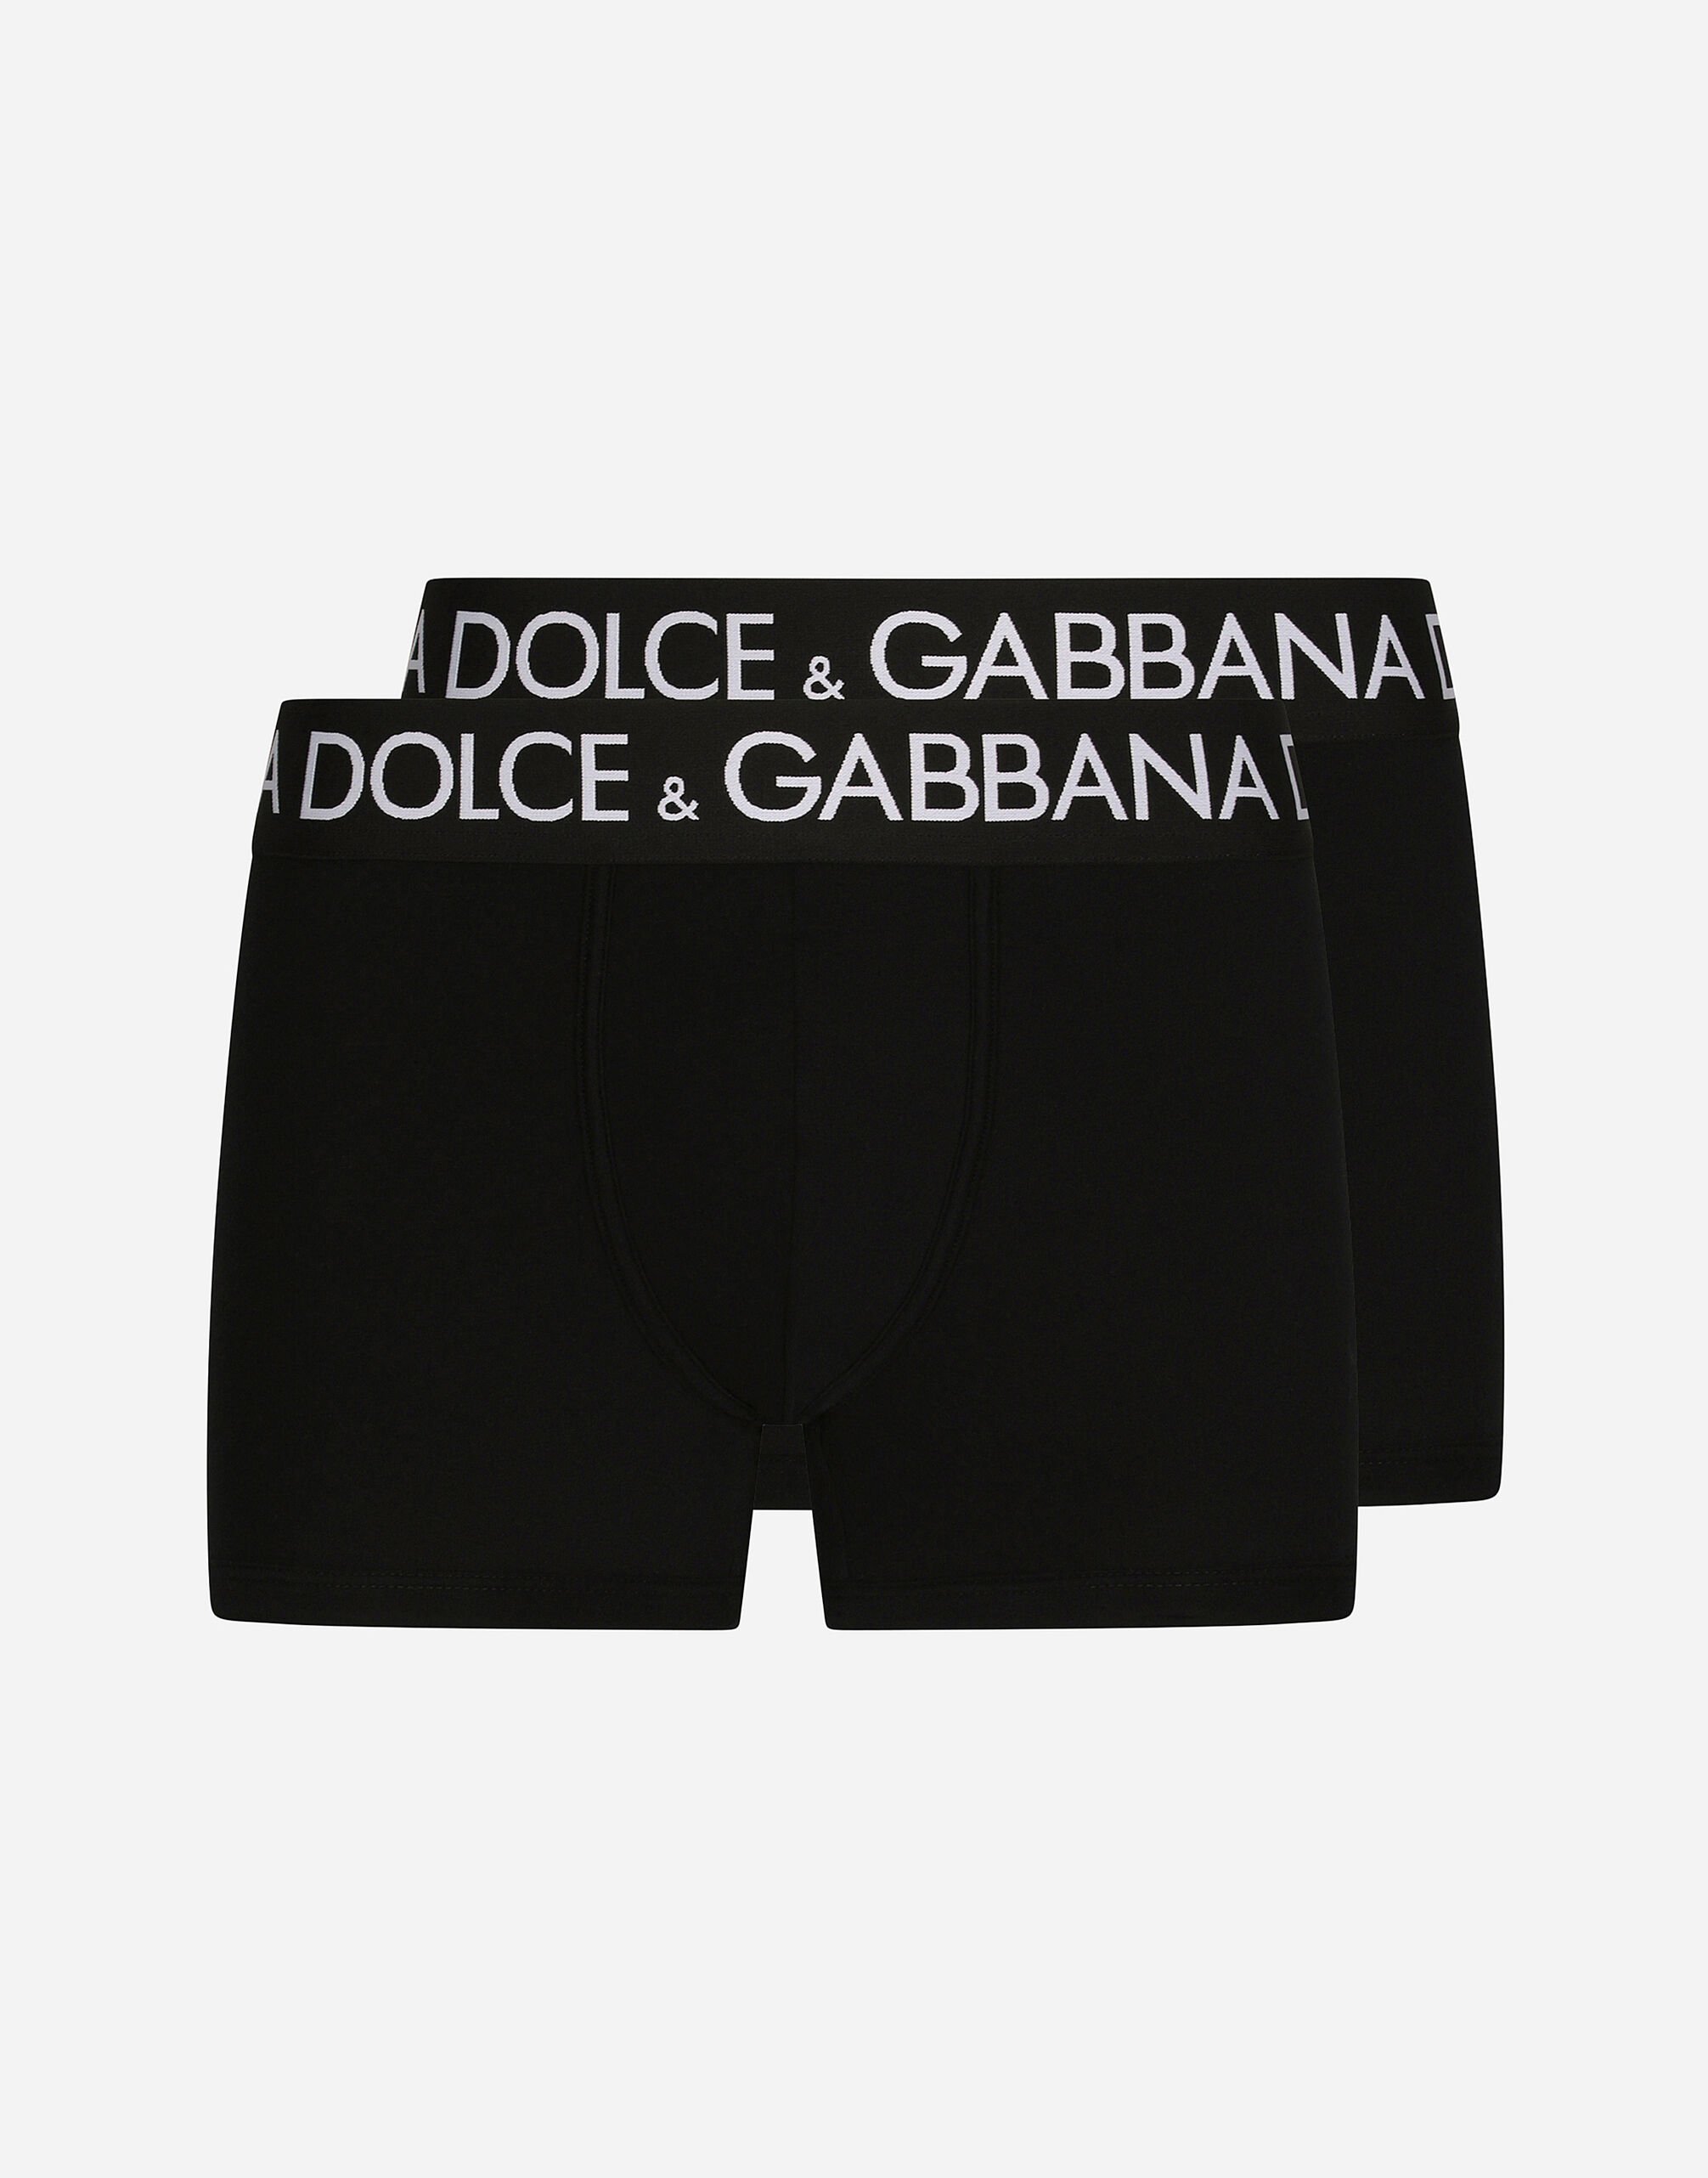 Dolce & Gabbana Two-pack cotton jersey boxers Black M9C03JONN95